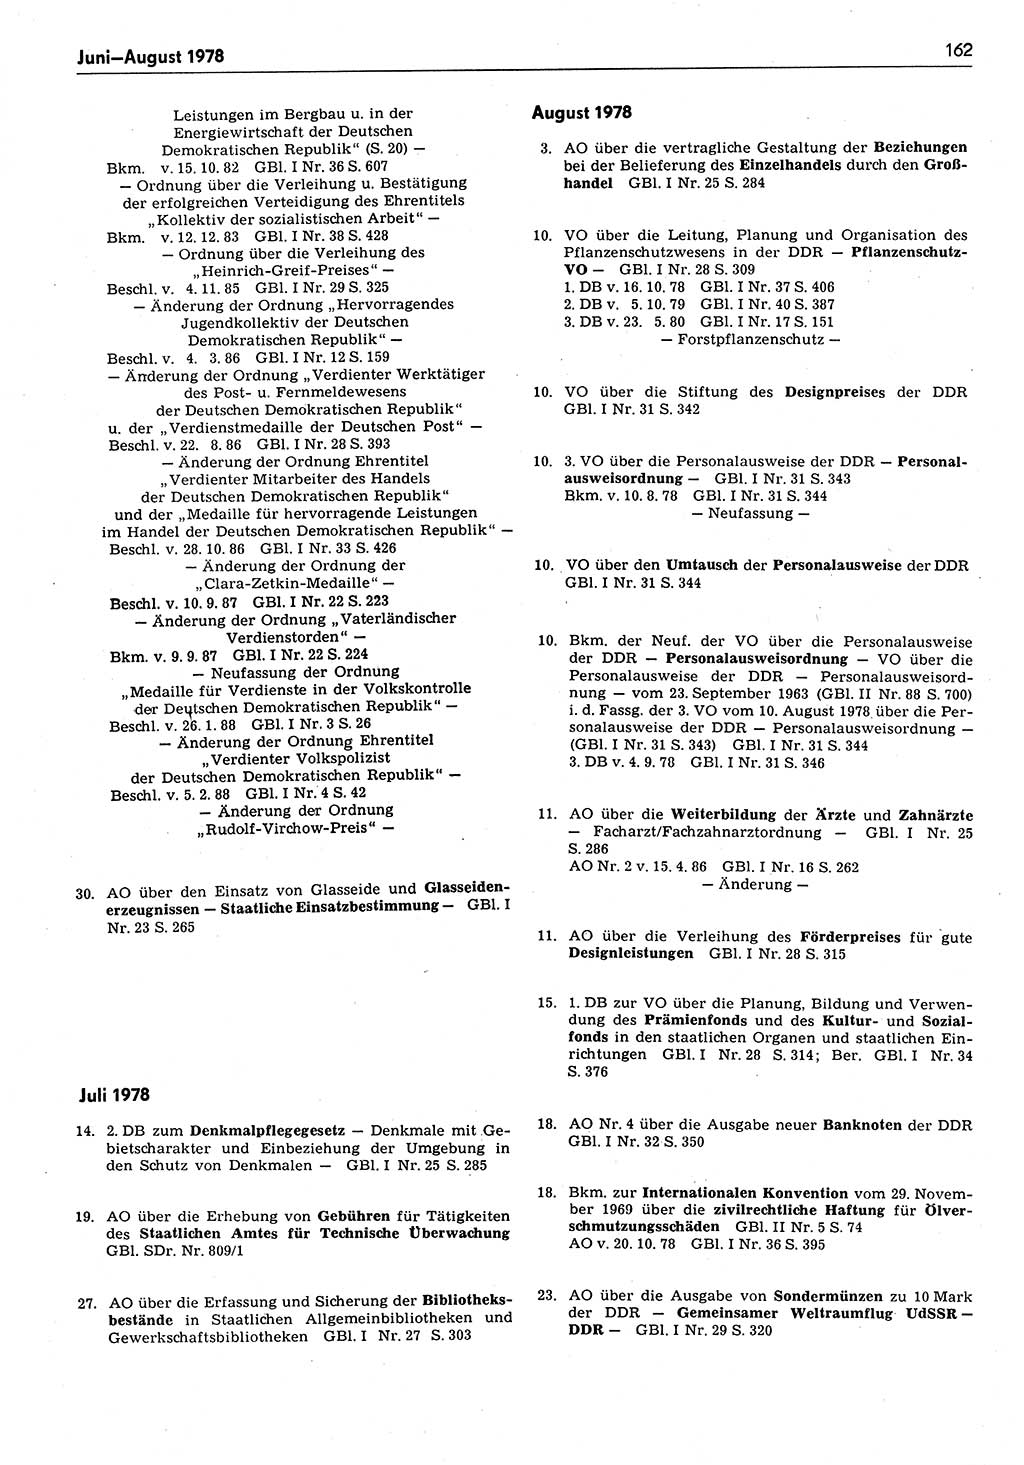 Das geltende Recht der Deutschen Demokratischen Republik (DDR) 1949-1988, Seite 162 (Gelt. R. DDR 1949-1988, S. 162)